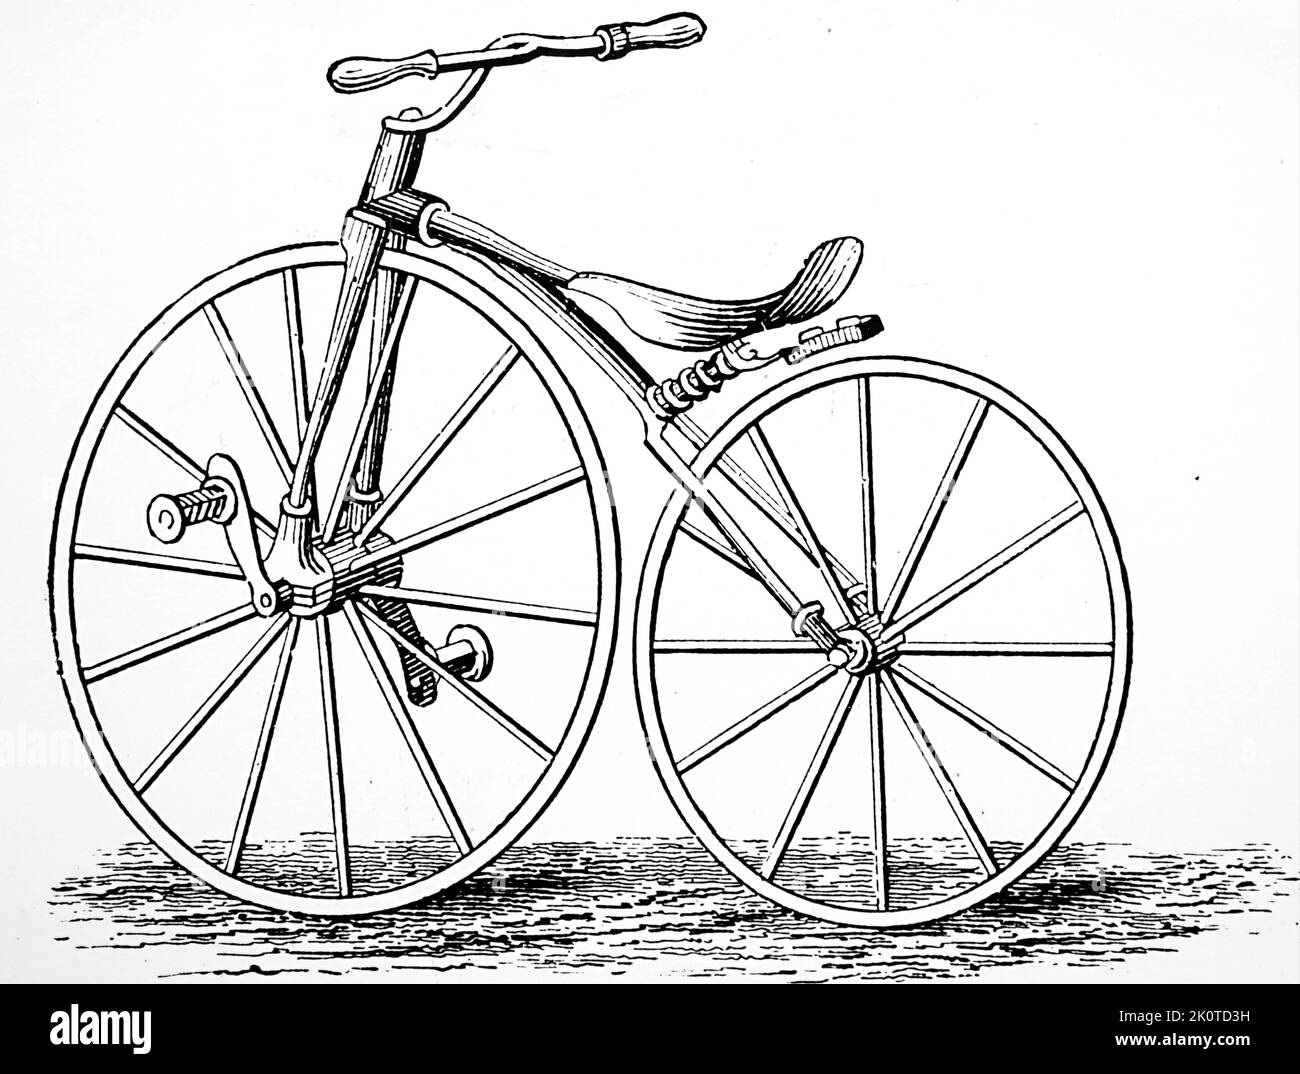 La bicyclette à pédale de Pickering. 'America' d'Edward H. Knight, le Dictionnaire pratique de mécanique, 1880 Banque D'Images